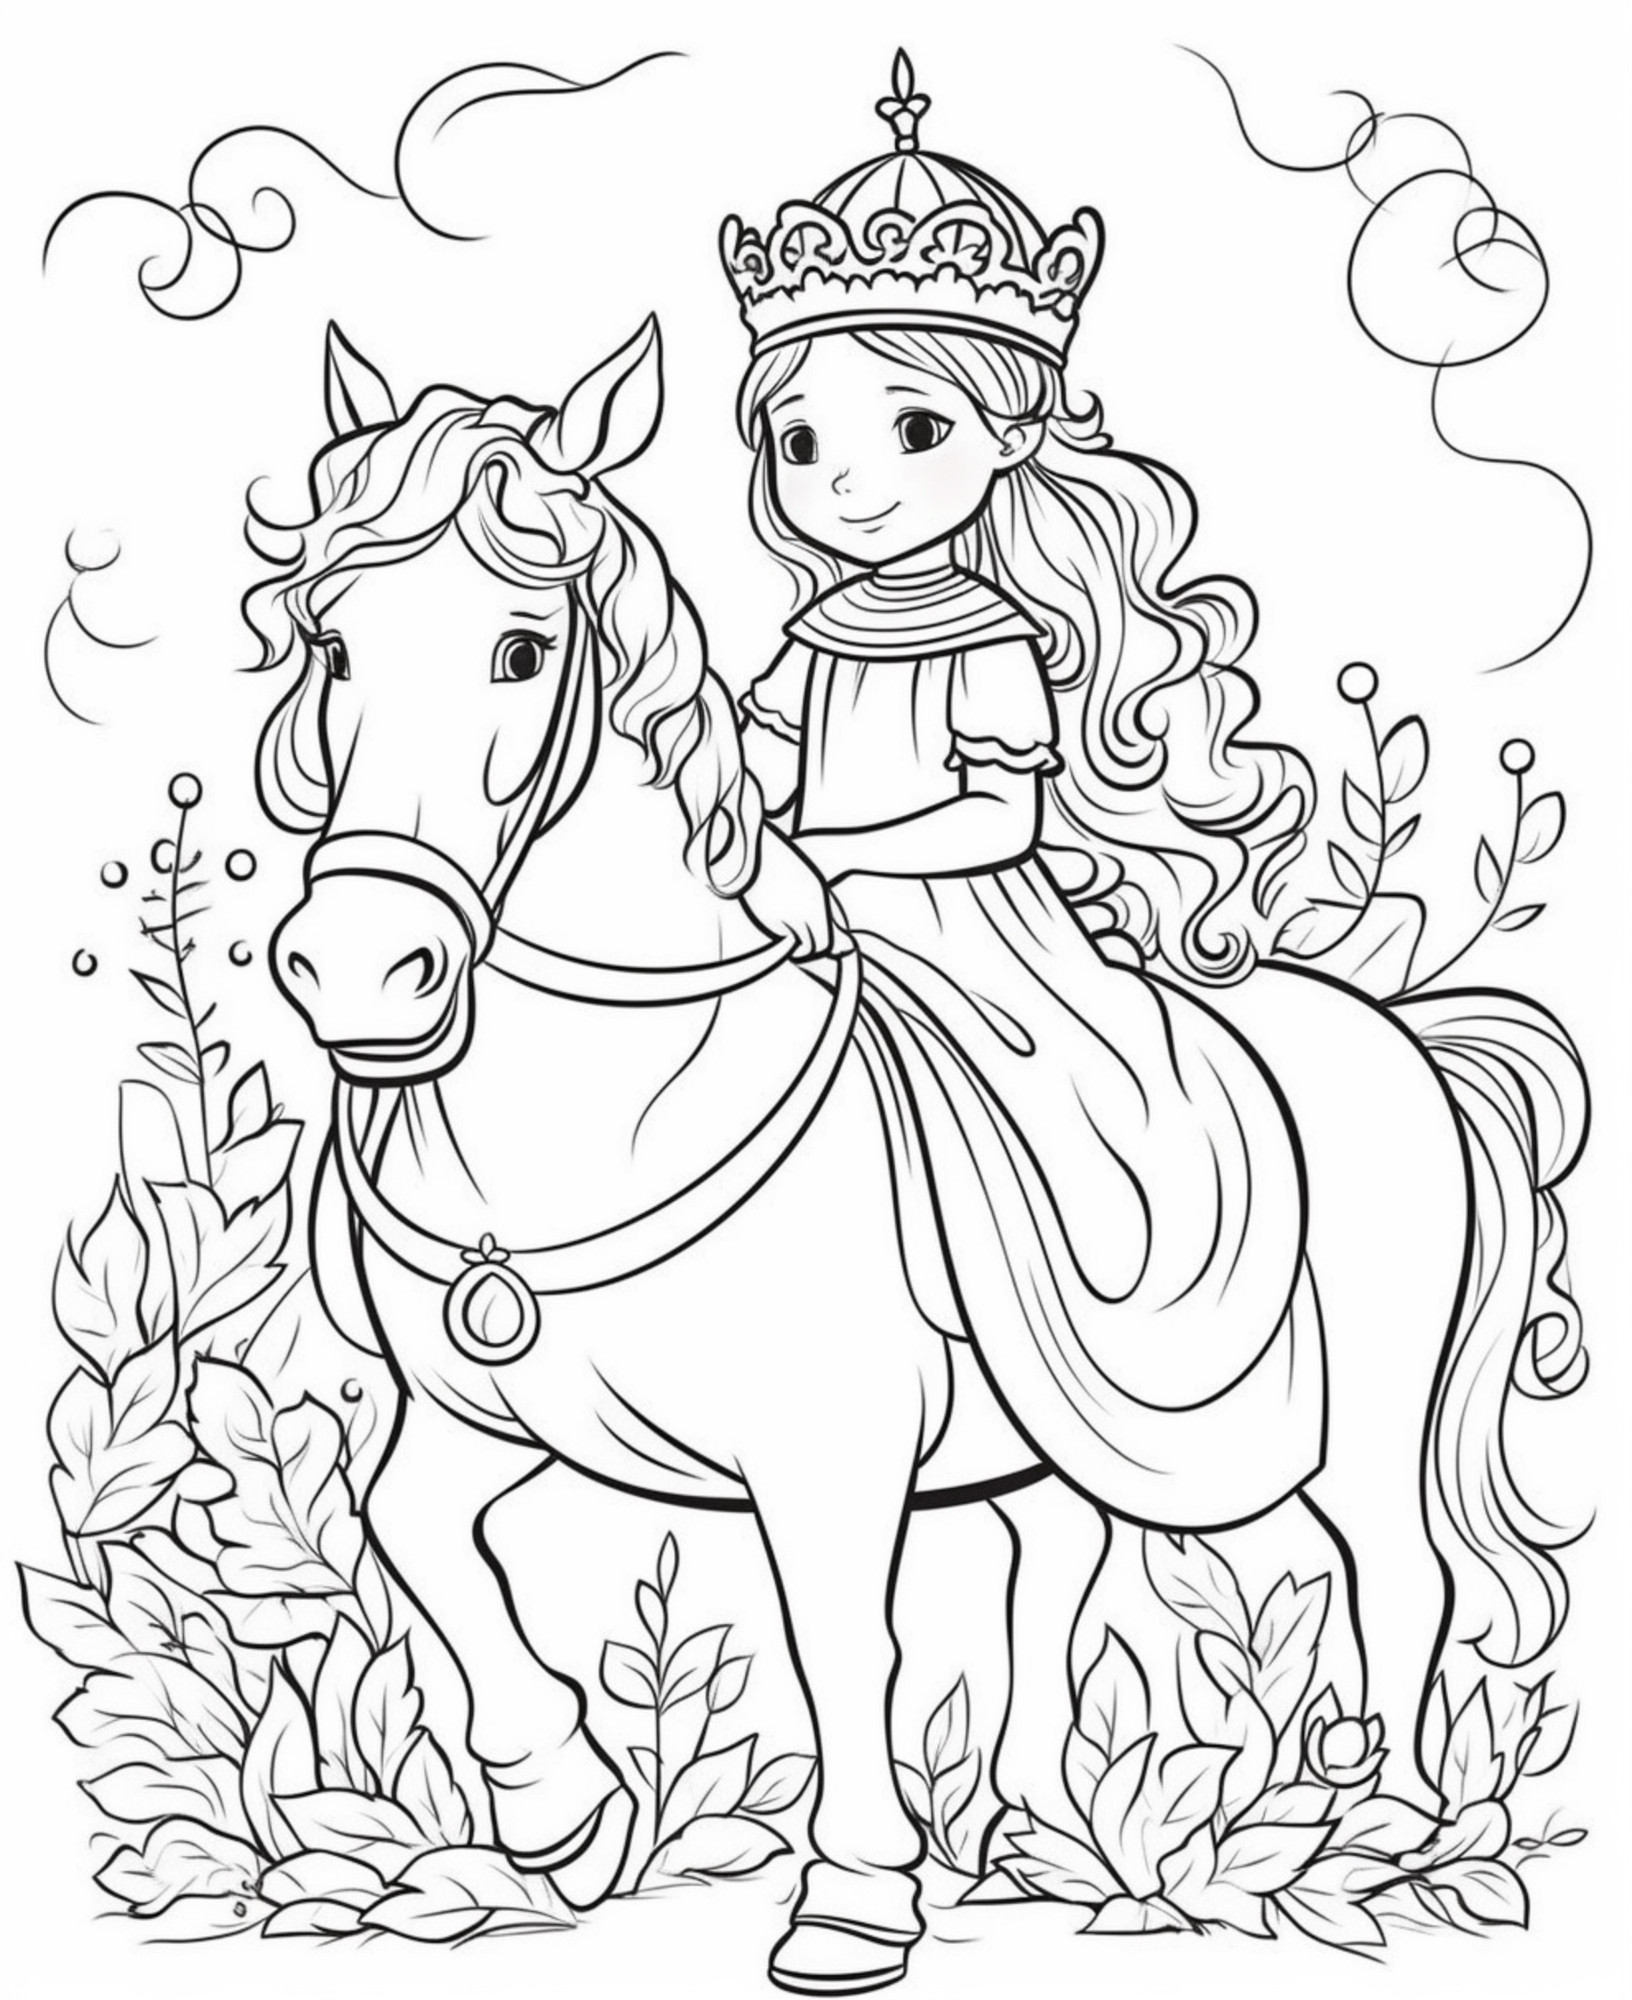 Раскраска для детей: принцесса верхом на лошади